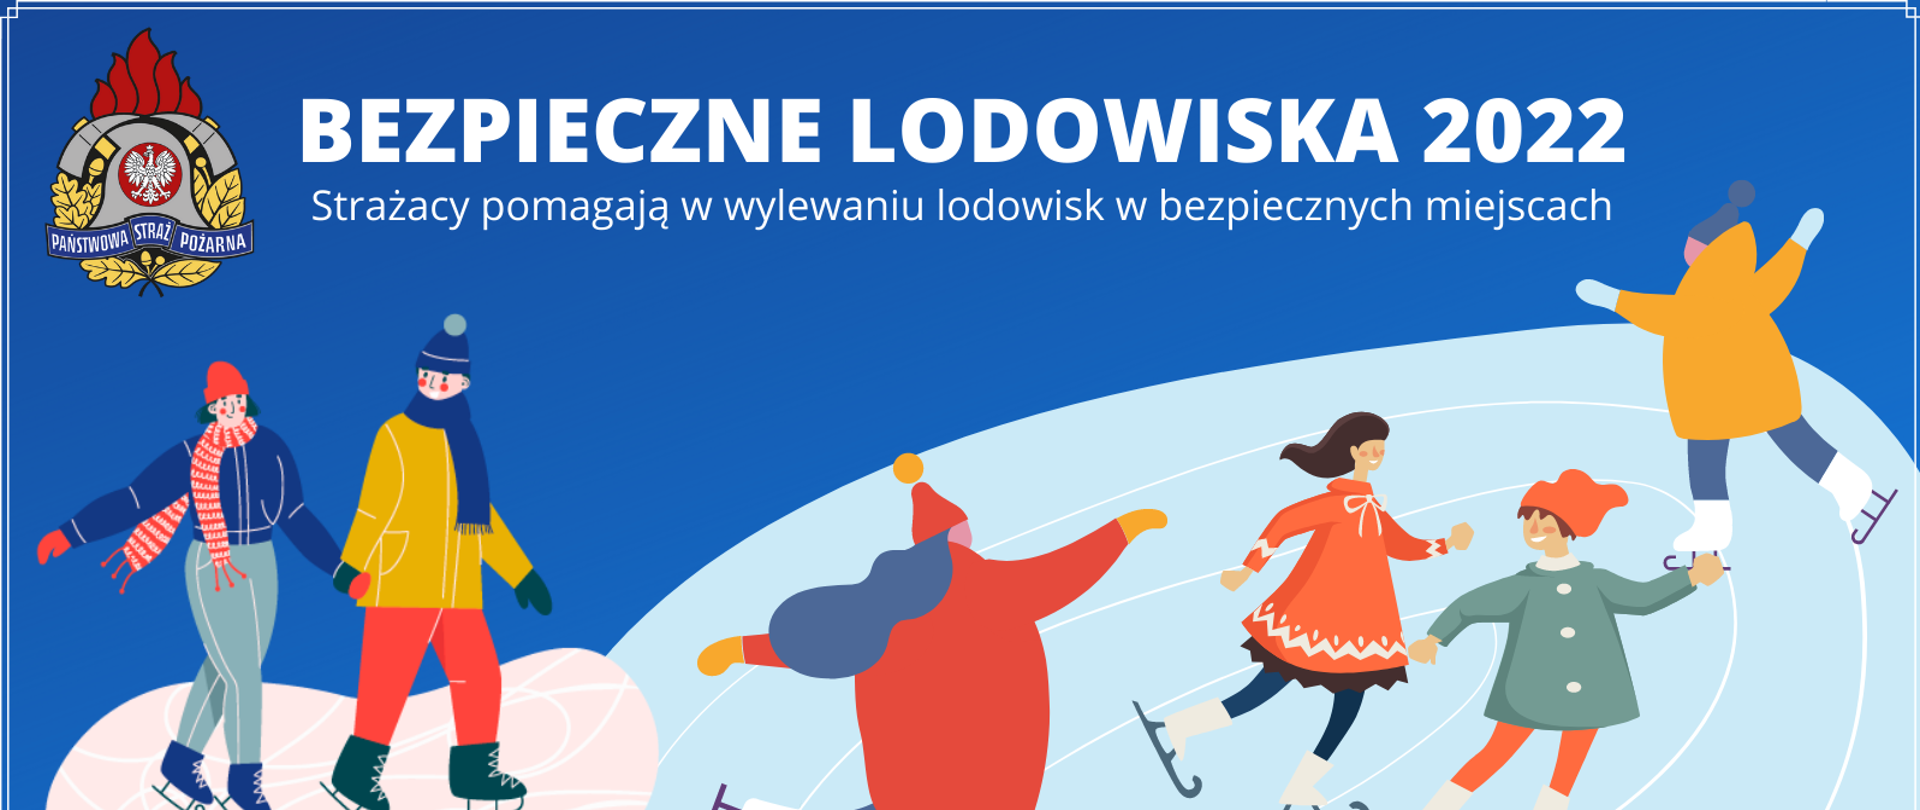 Plakat dotyczący akcji "BEZPIECZNE LODOWISKA 2022"